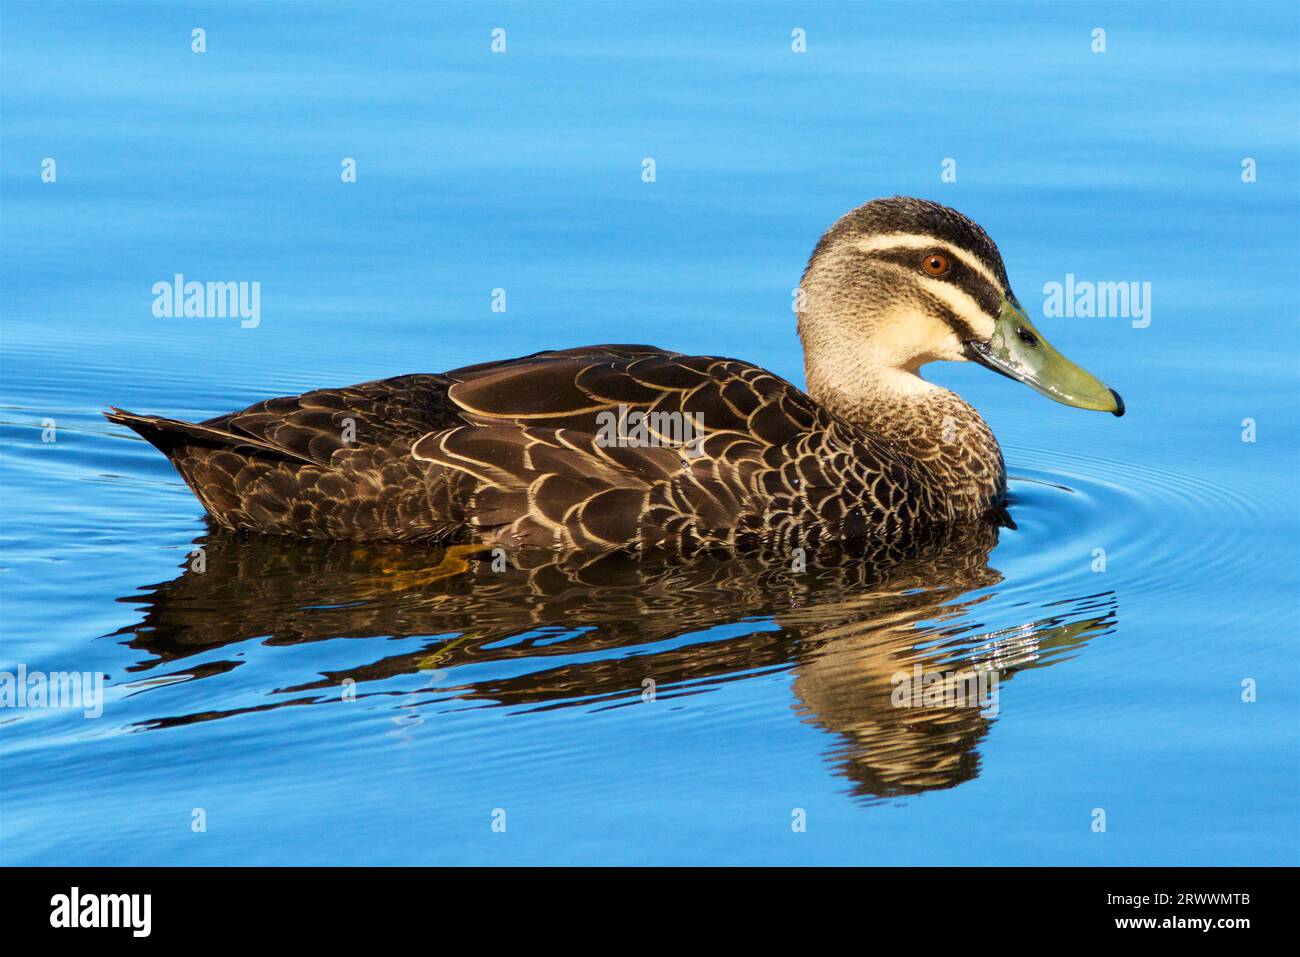 Pacific Black Duck, Anas superciliosa, swimming on Bibra Lake in Perth, Western Australia Stock Photo